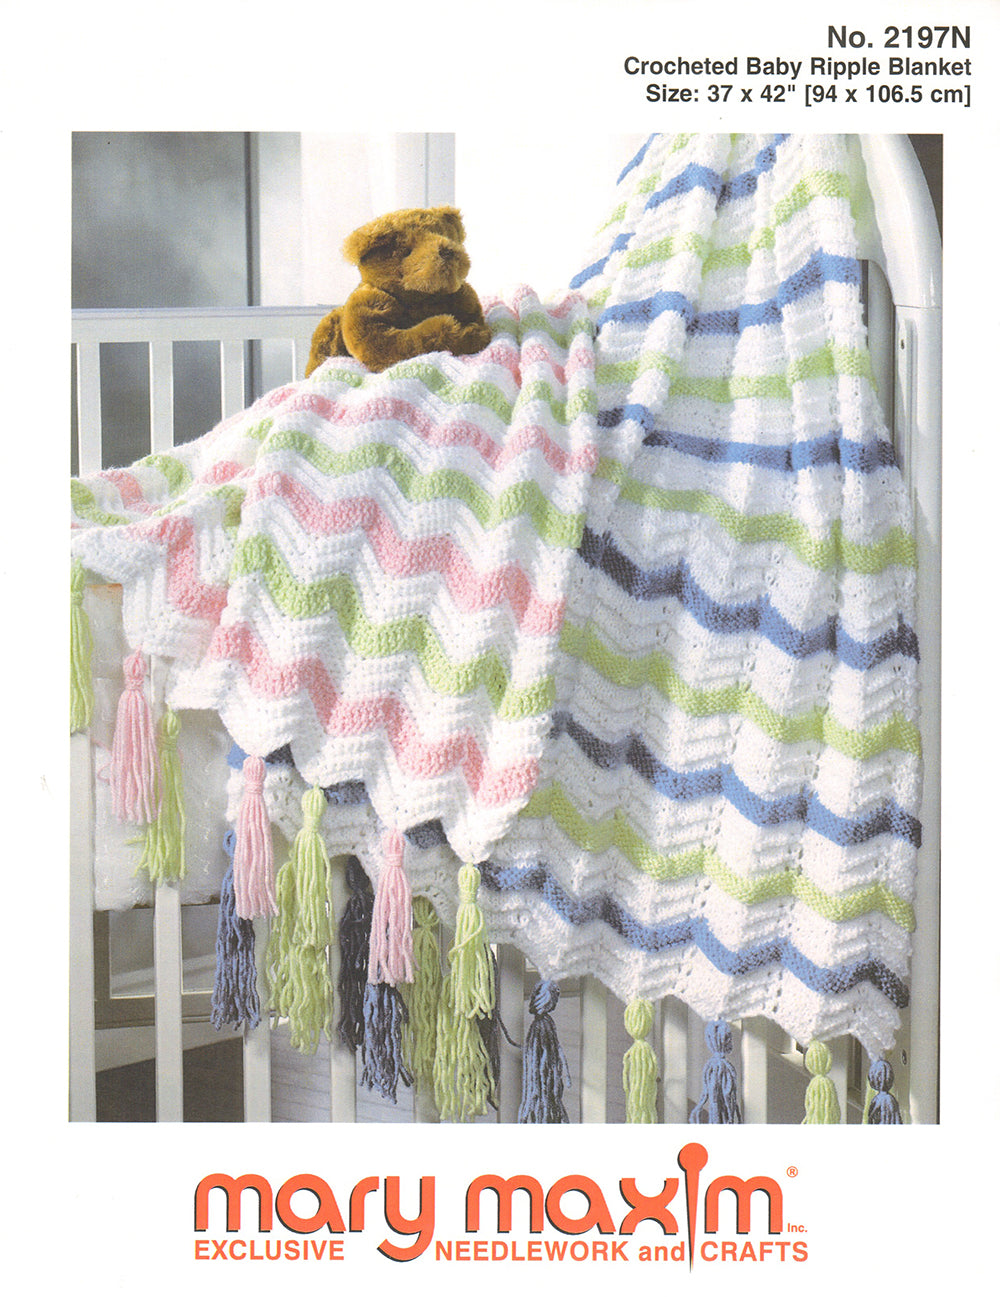 Free Crochet Baby Ripple Blanket Pattern